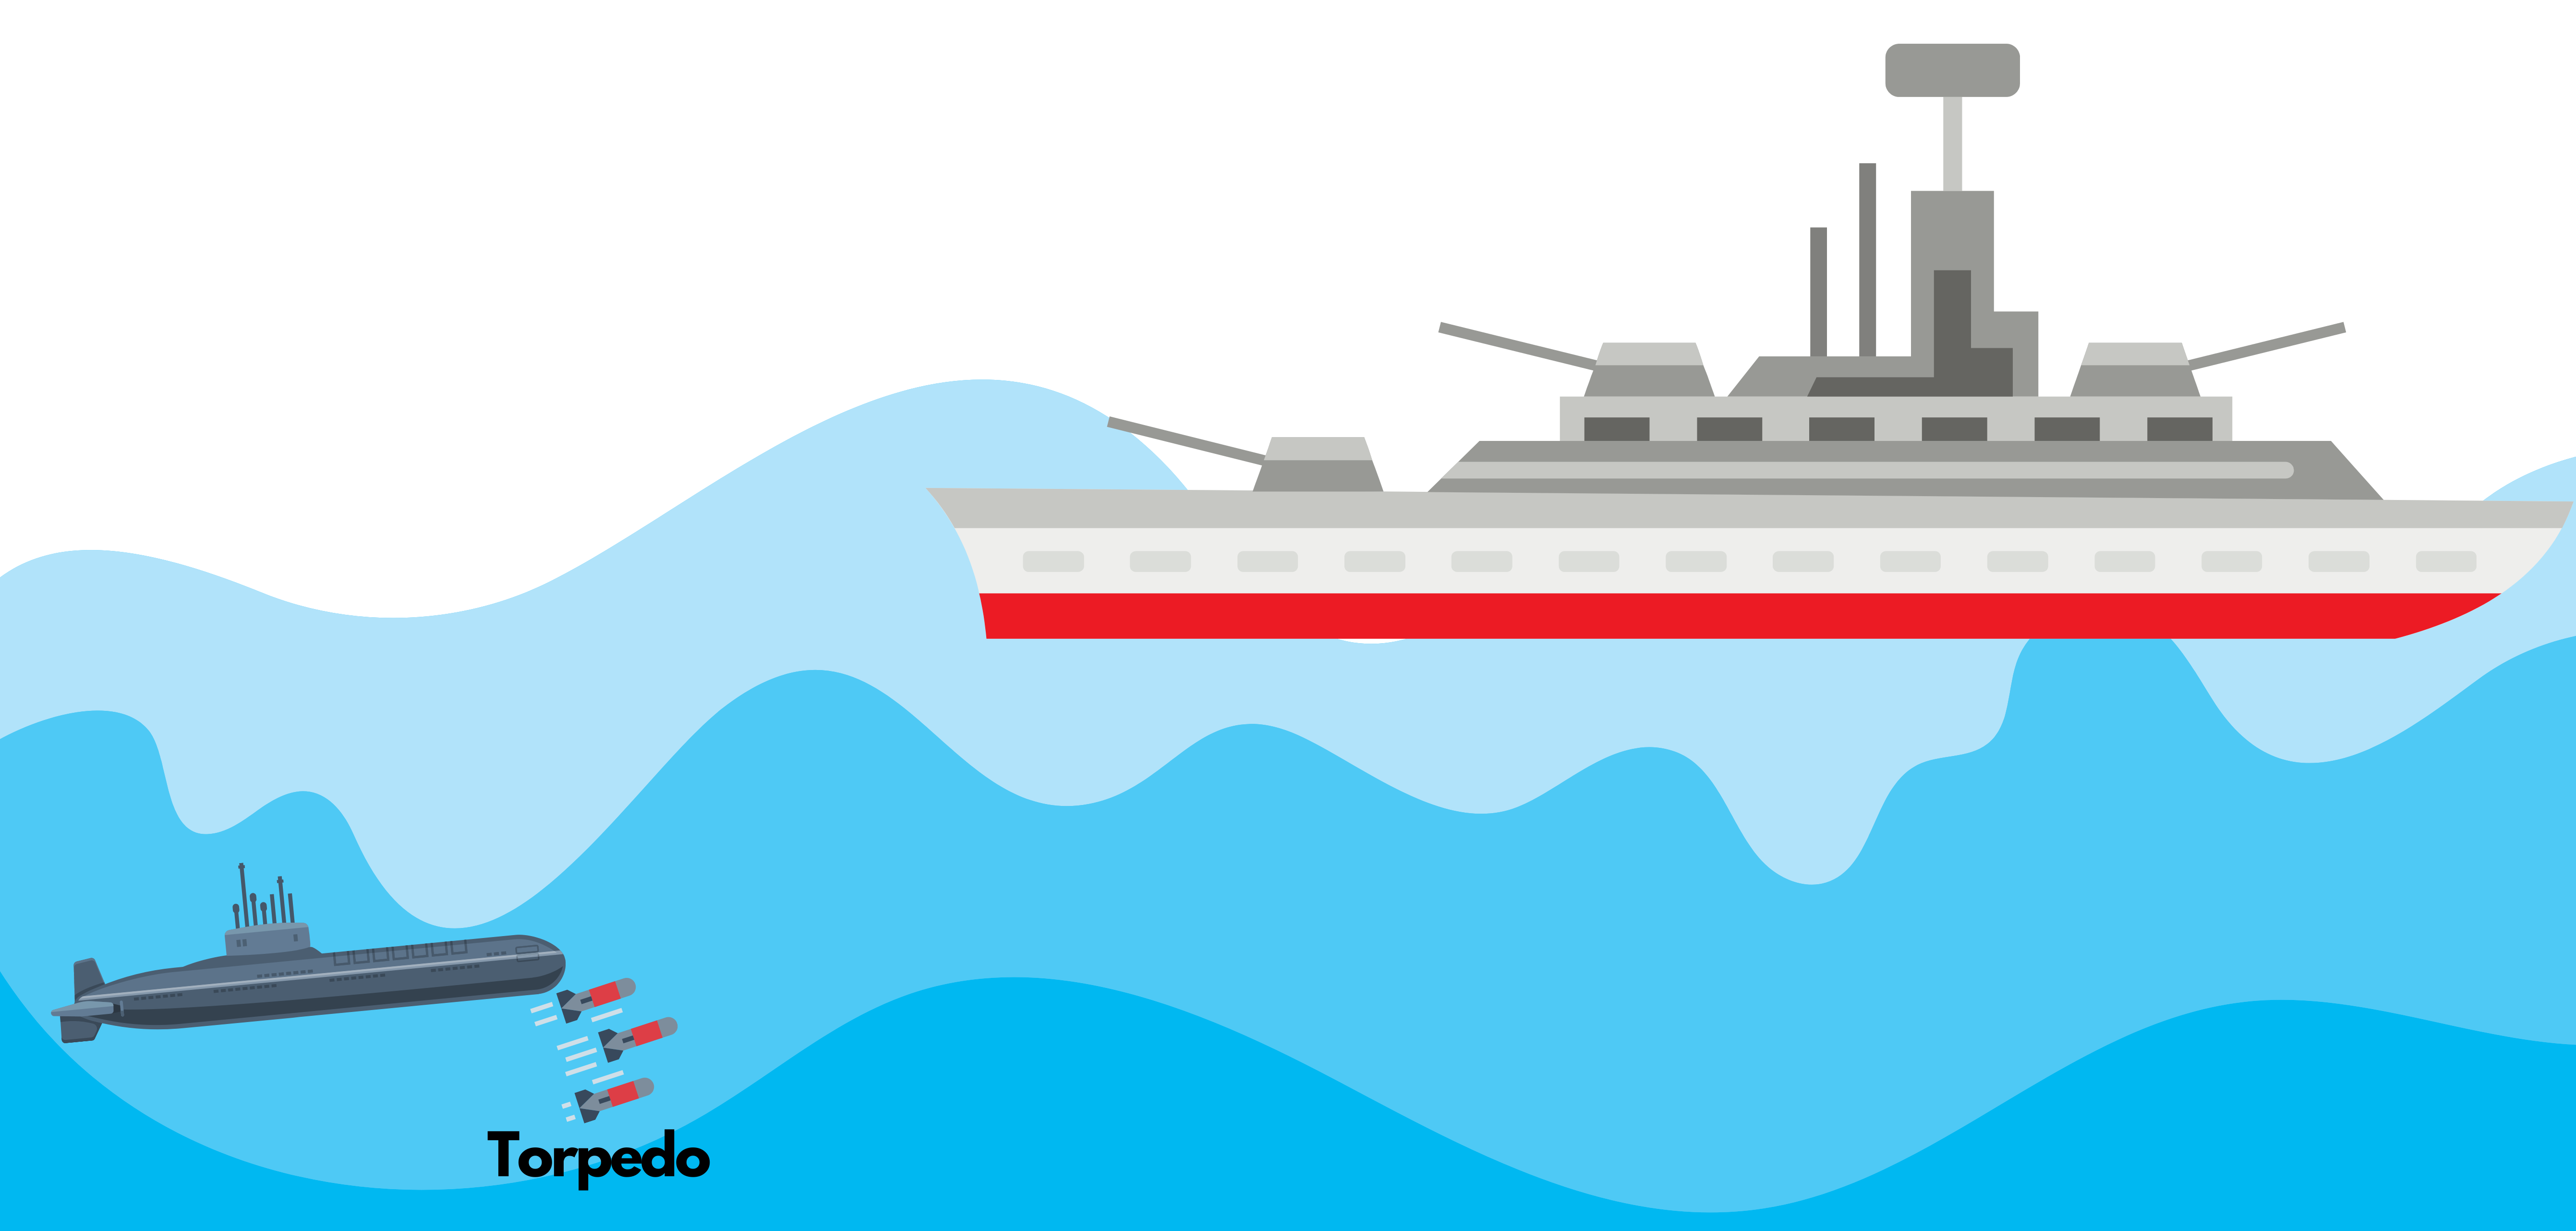 How Torpedoes Work